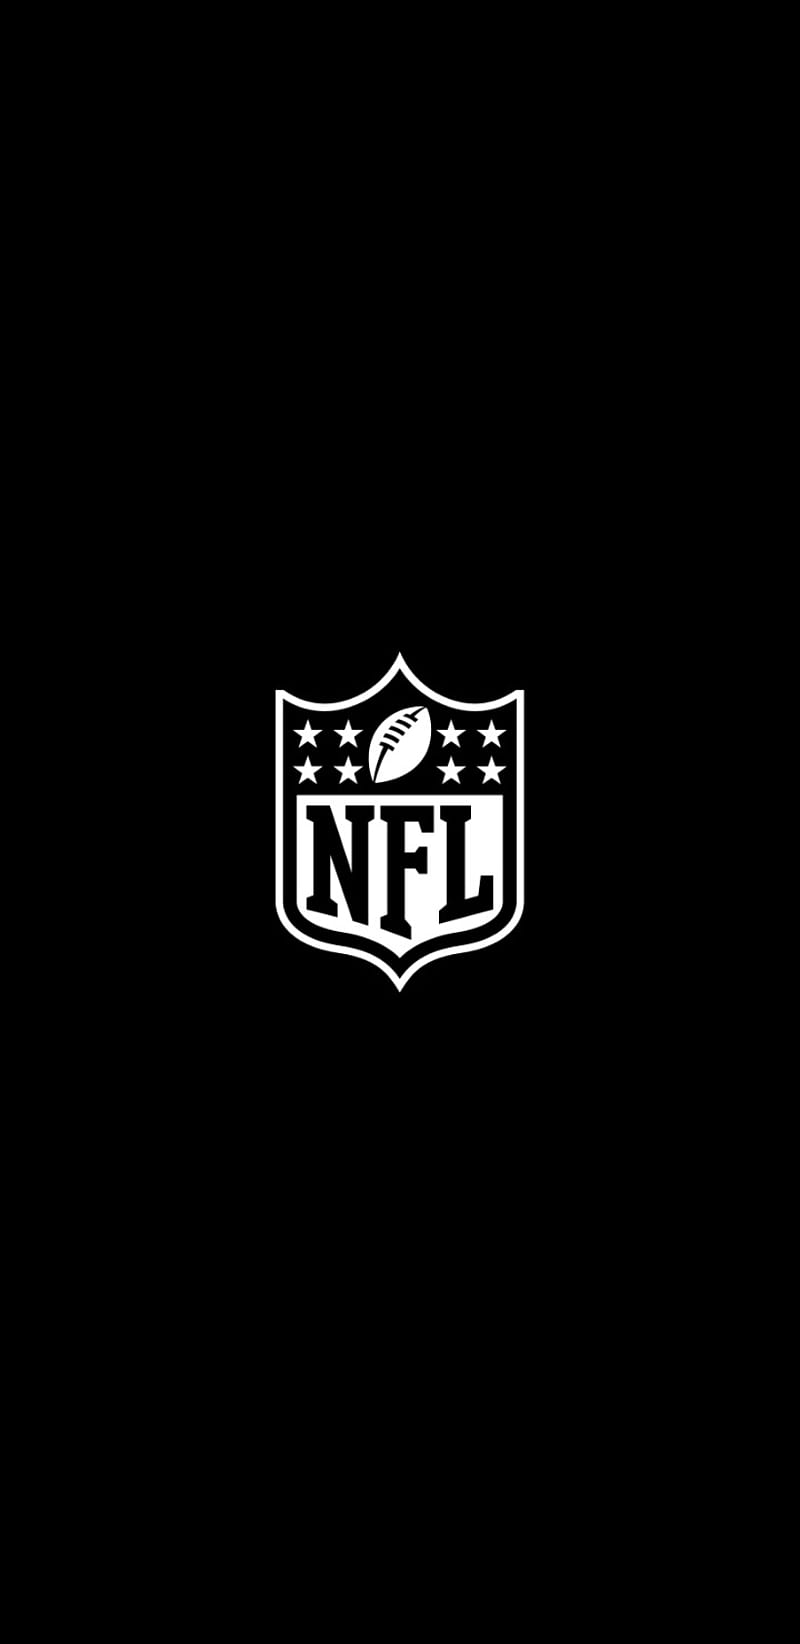 NFL Wallpapers Free HD Download 500 HQ  Unsplash